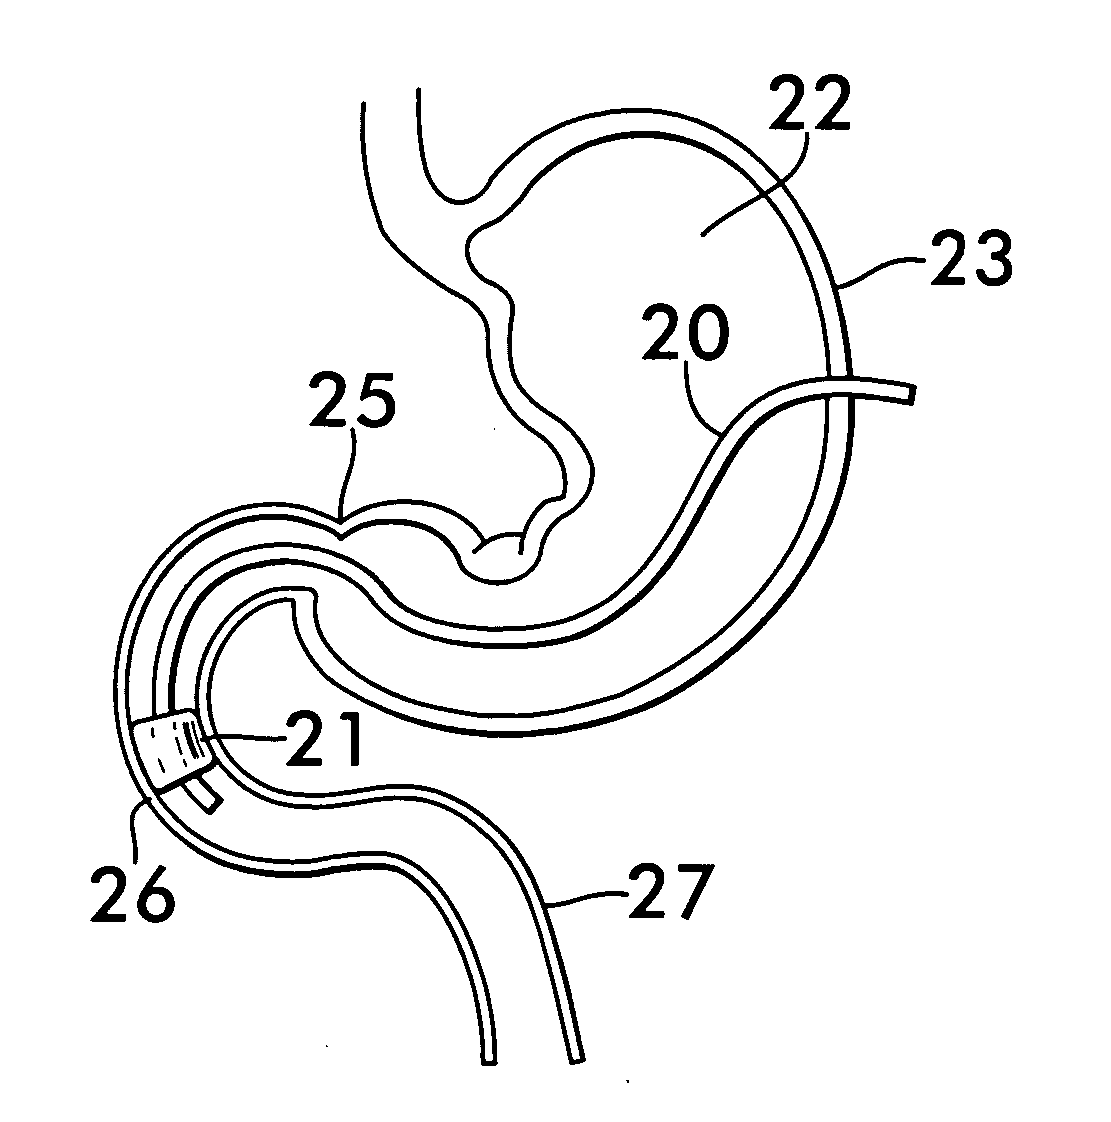 Gastrojejunal feeding tube